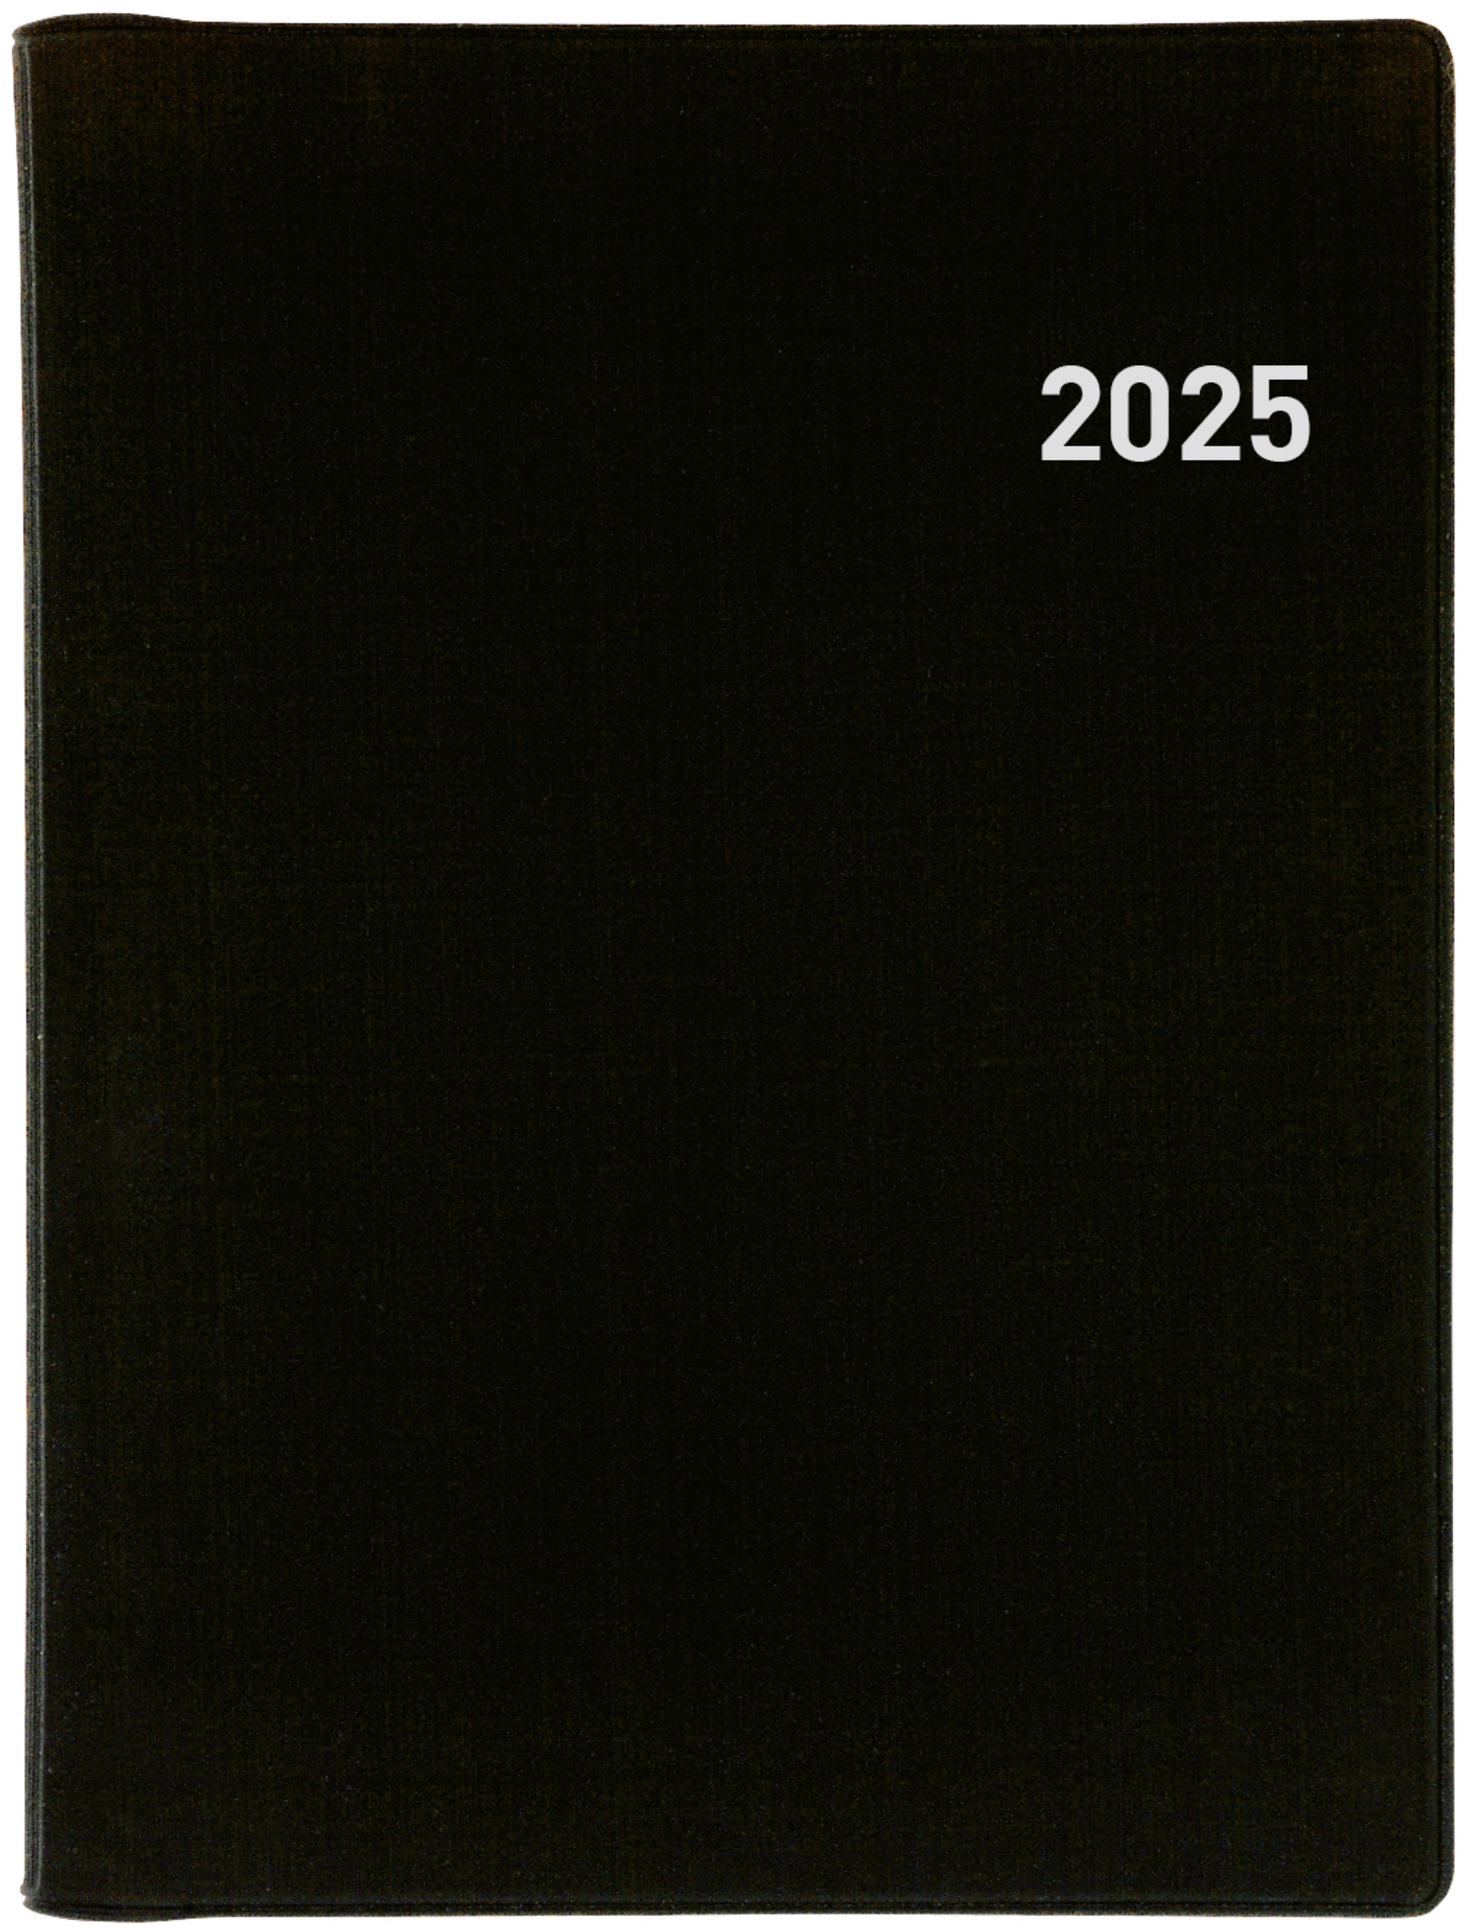 BIELLA Agenda Technikus 4 Wire-O 2025 834141020025 1J/1P noir ML 10.1x14.2cm